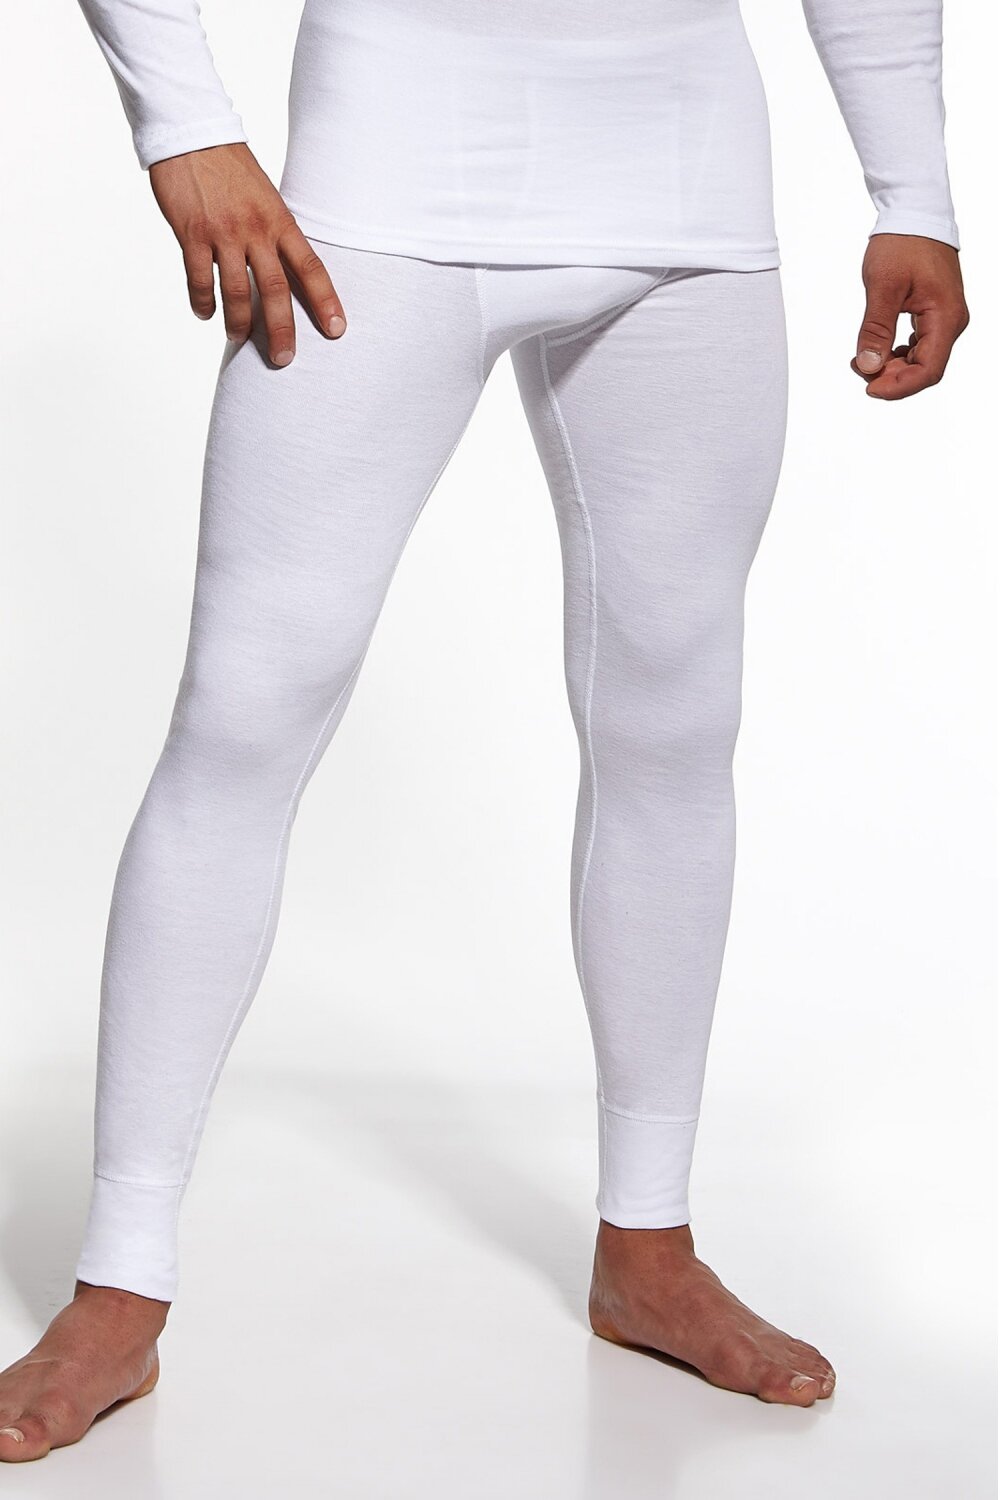 CORNETTE Pánské podvlékací kalhoty Authentic white